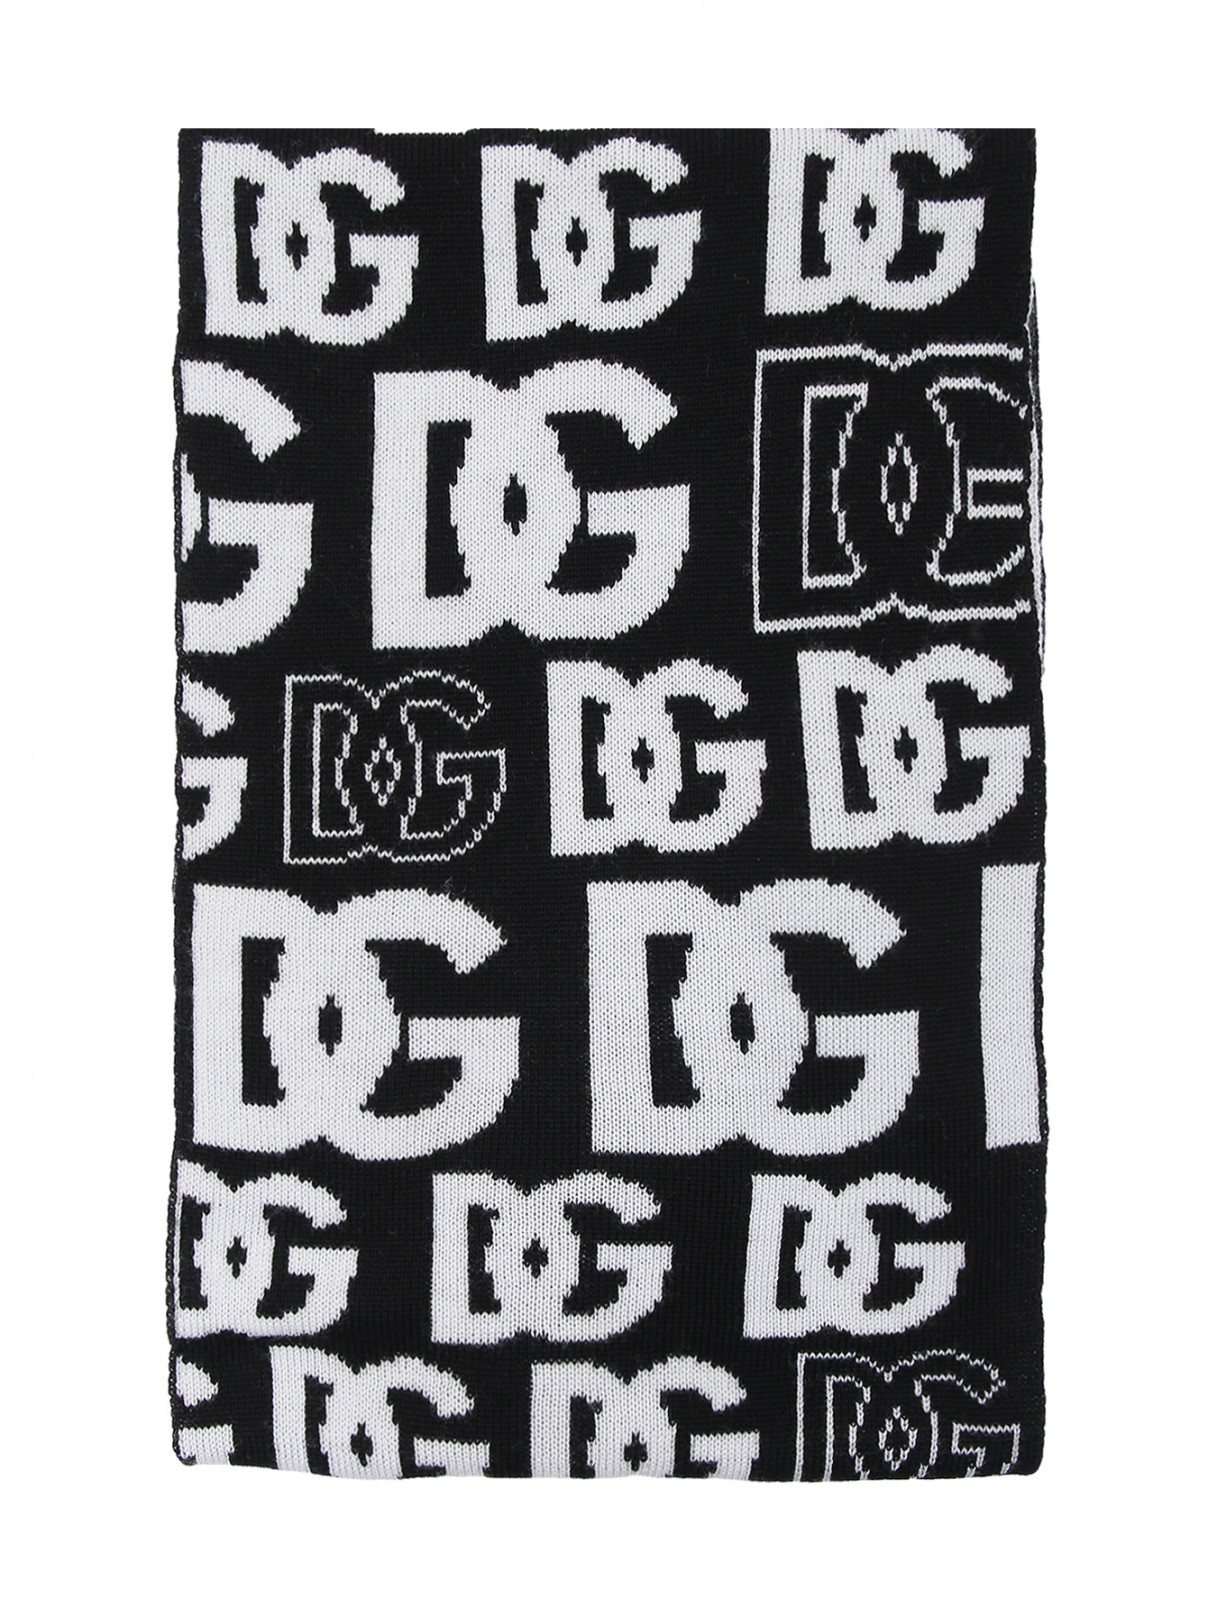 Шарф из шерсти с логотипичным узором Dolce & Gabbana  –  Общий вид  – Цвет:  Черный